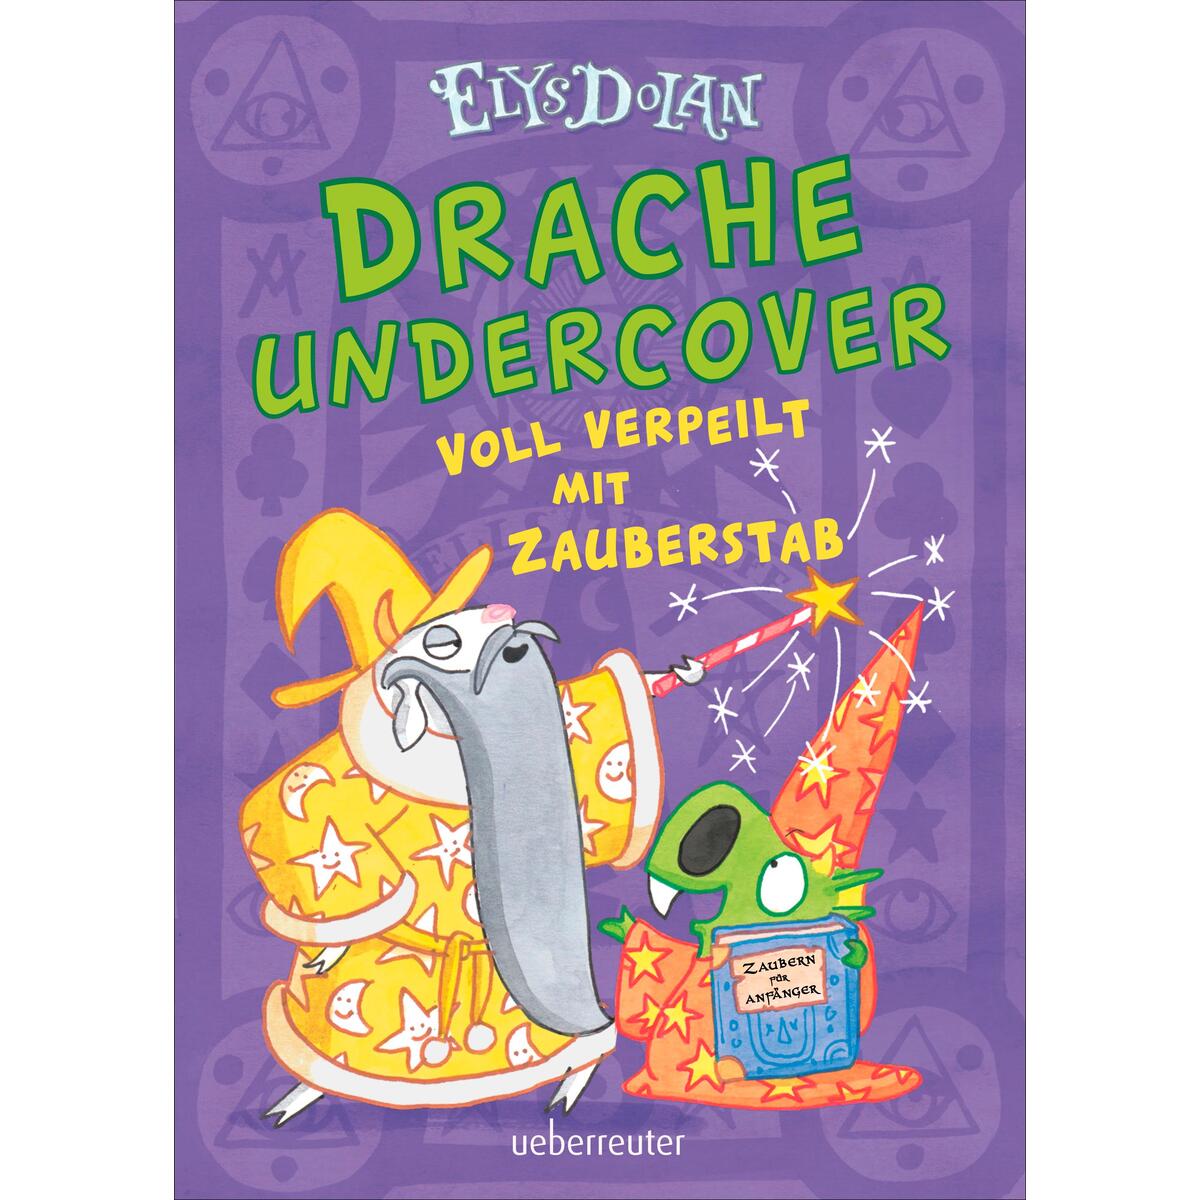 Drache undercover - Voll verpeilt mit Zauberstab (Drache Undercover, Bd. 2) von Ueberreuter Verlag